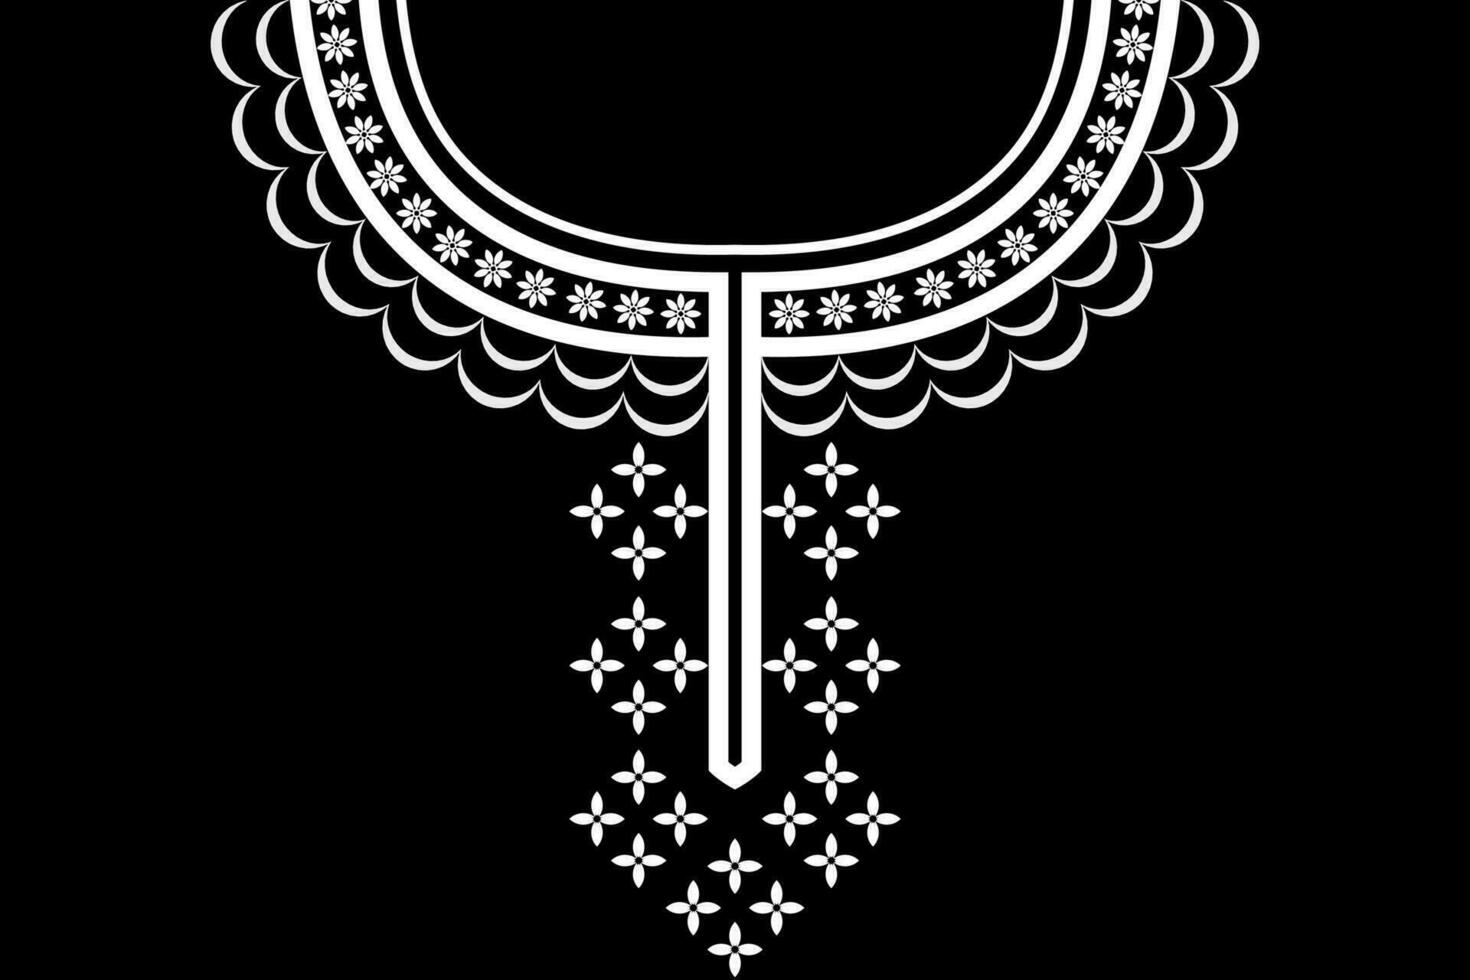 ethnisch Halsband Spitze orientalisch Muster. aztekisch Stil Stickerei abstrakt Vektor Illustration. Designs zum Mode Textur, Textil, Stoff, Shirt, Stoff